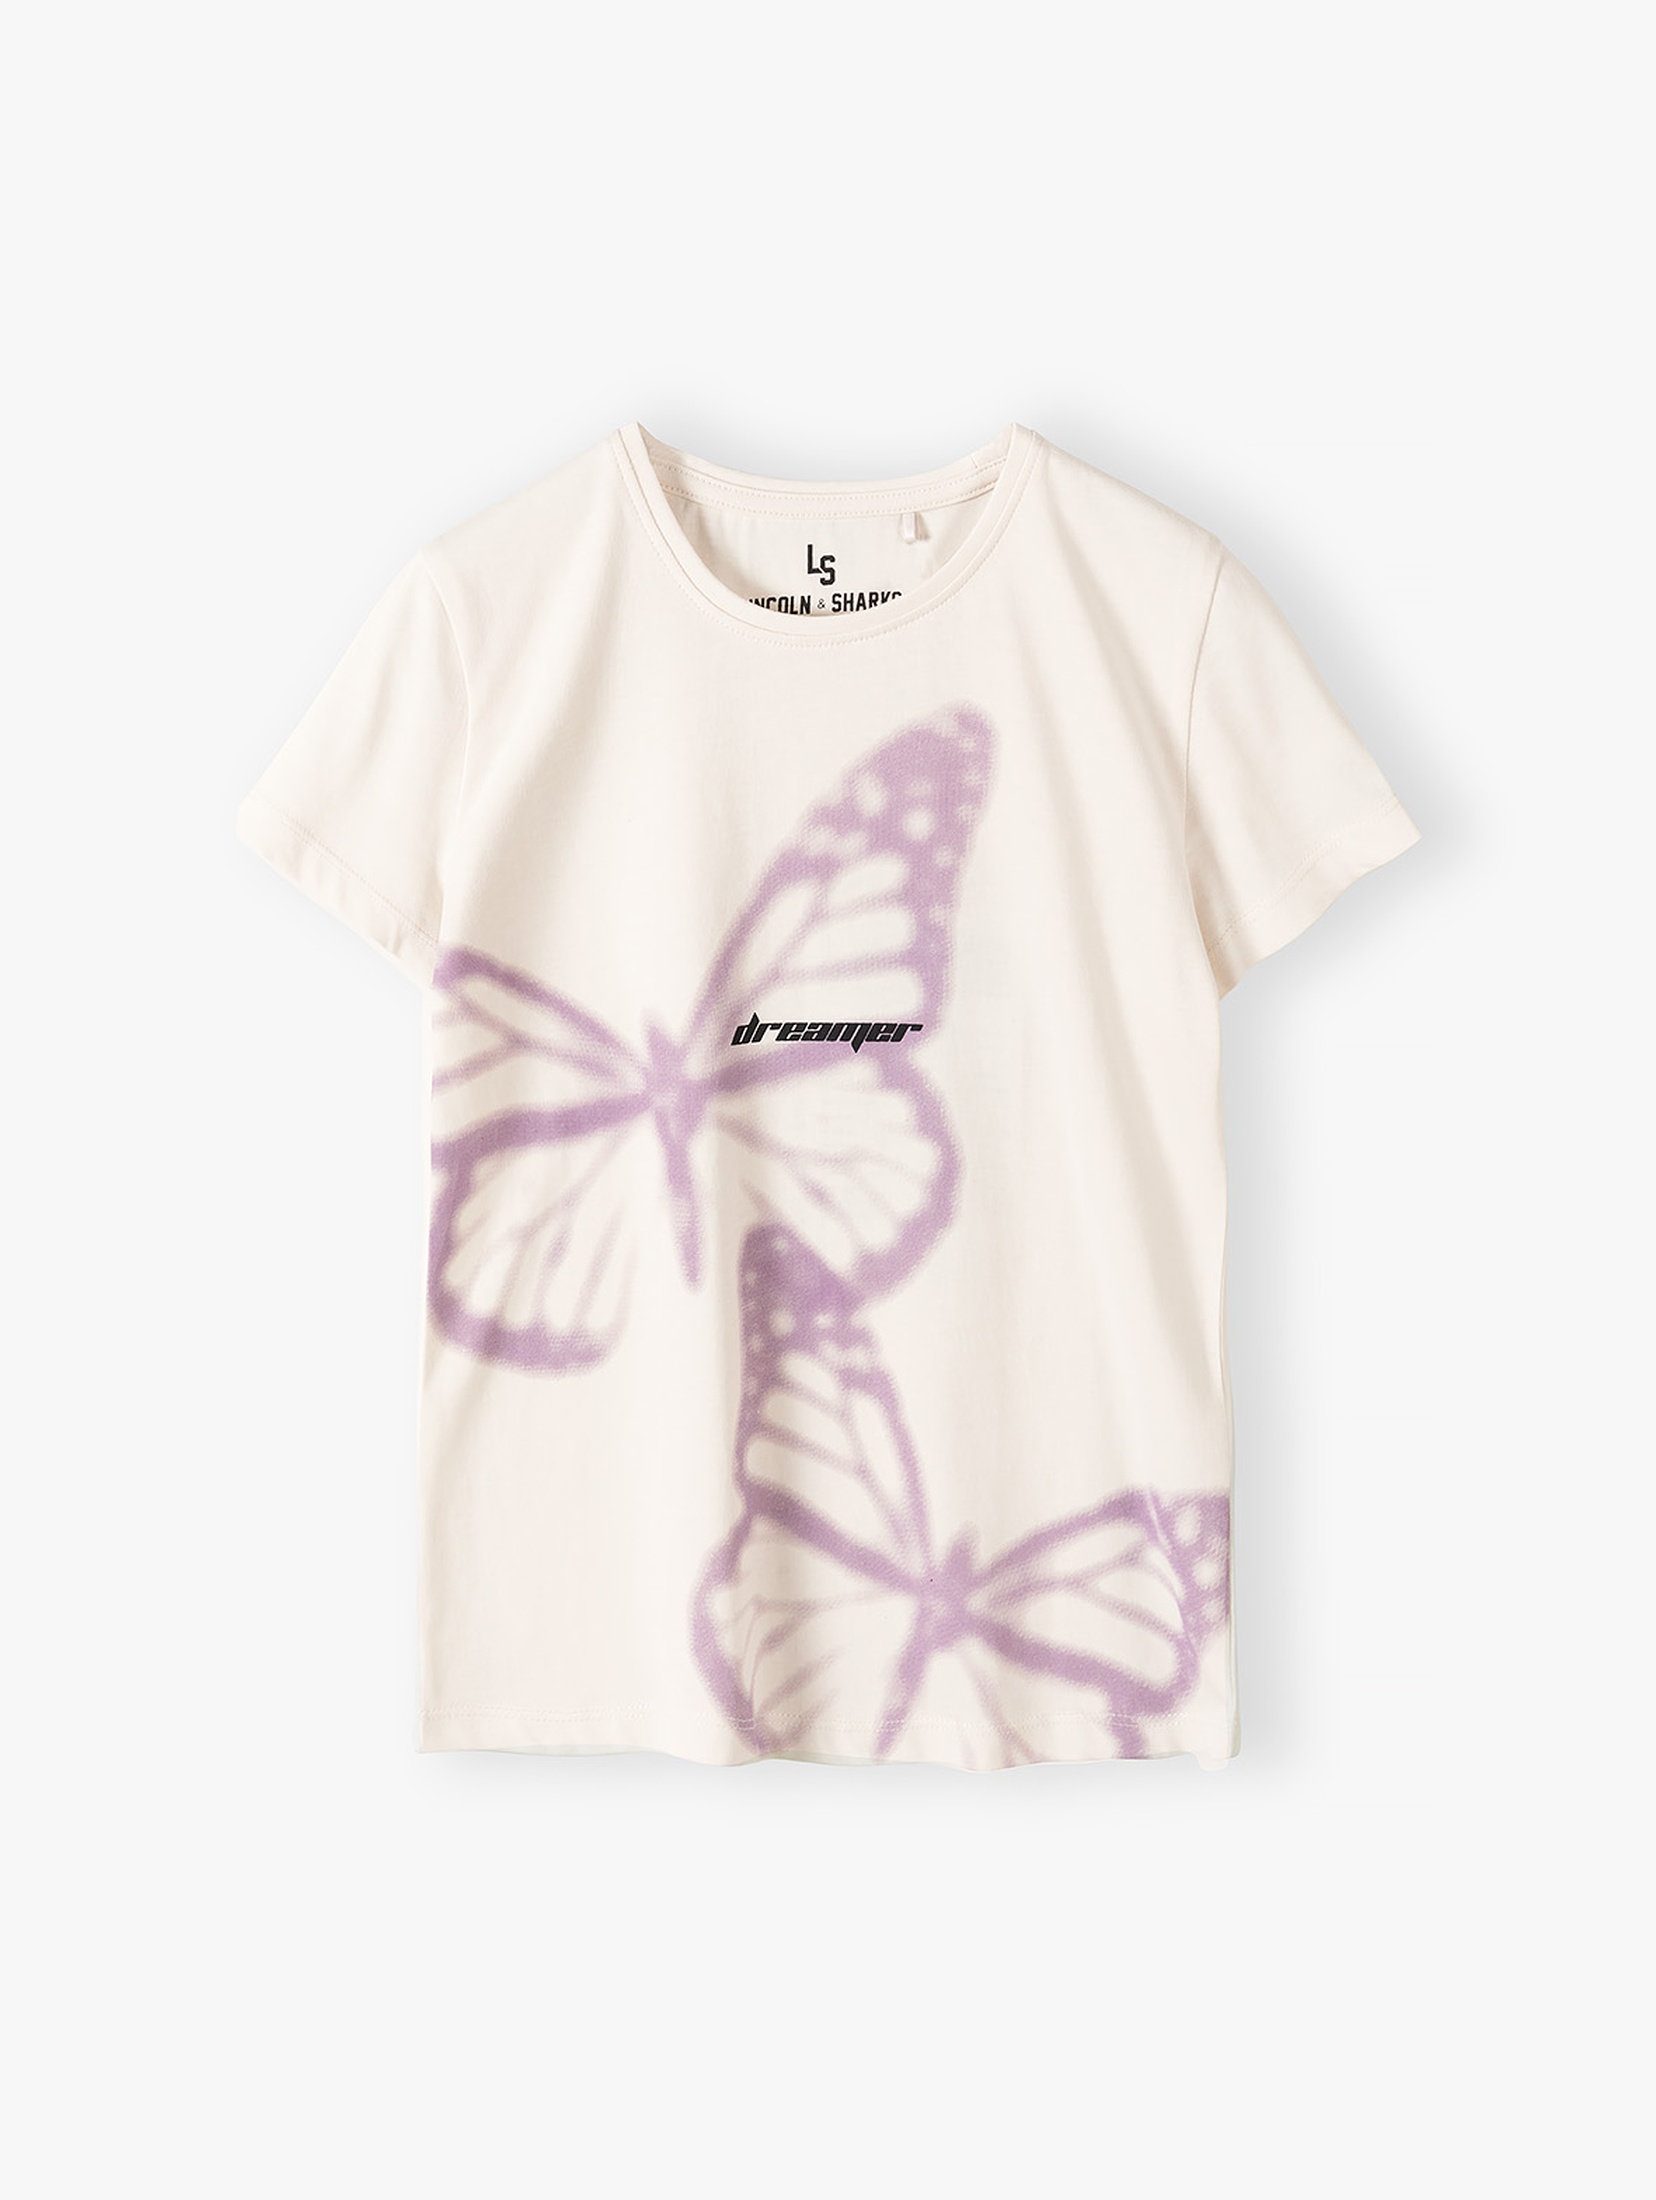 Koszulka dziewczęca z fioletowymi motylami